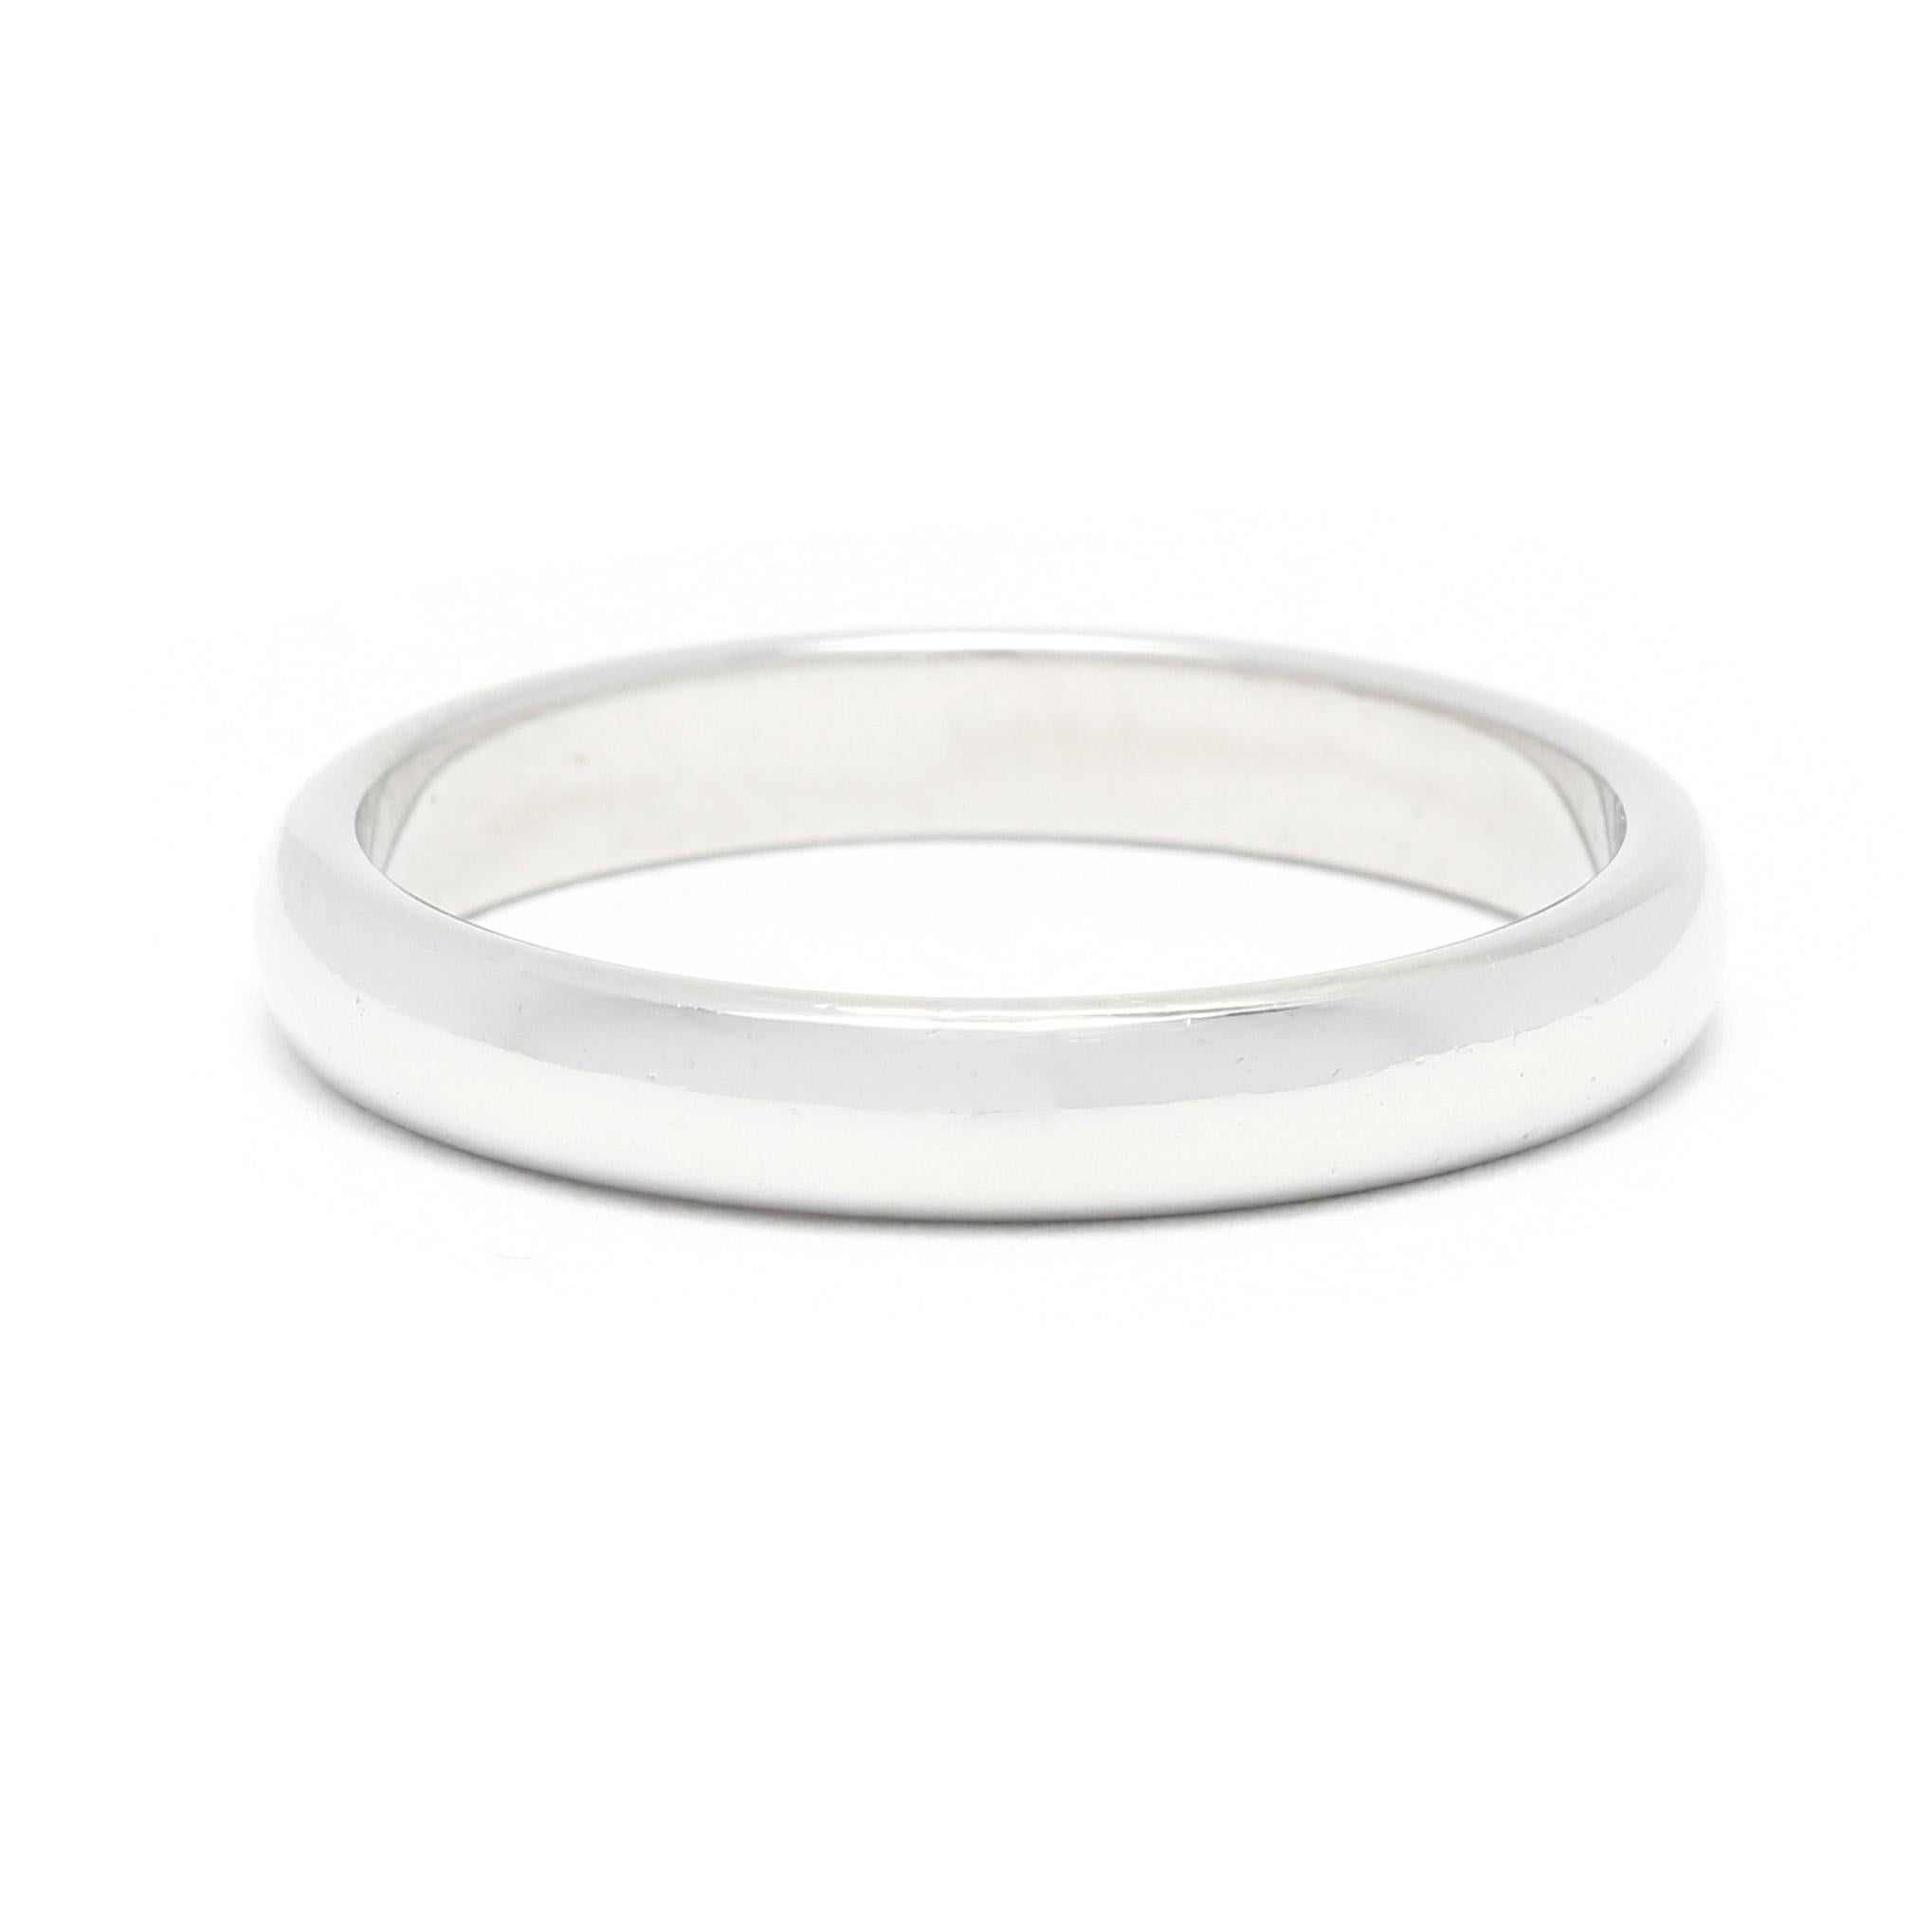 Dieser elegante, stapelbare 2,65-mm-Ehering aus Platin ist perfekt für jeden Anlass. Der aus hochwertigem, haltbarem Platin gefertigte Ring hat eine klassische, zeitlose Ausstrahlung. Sein schlankes, schlichtes Design macht ihn zur idealen Wahl für